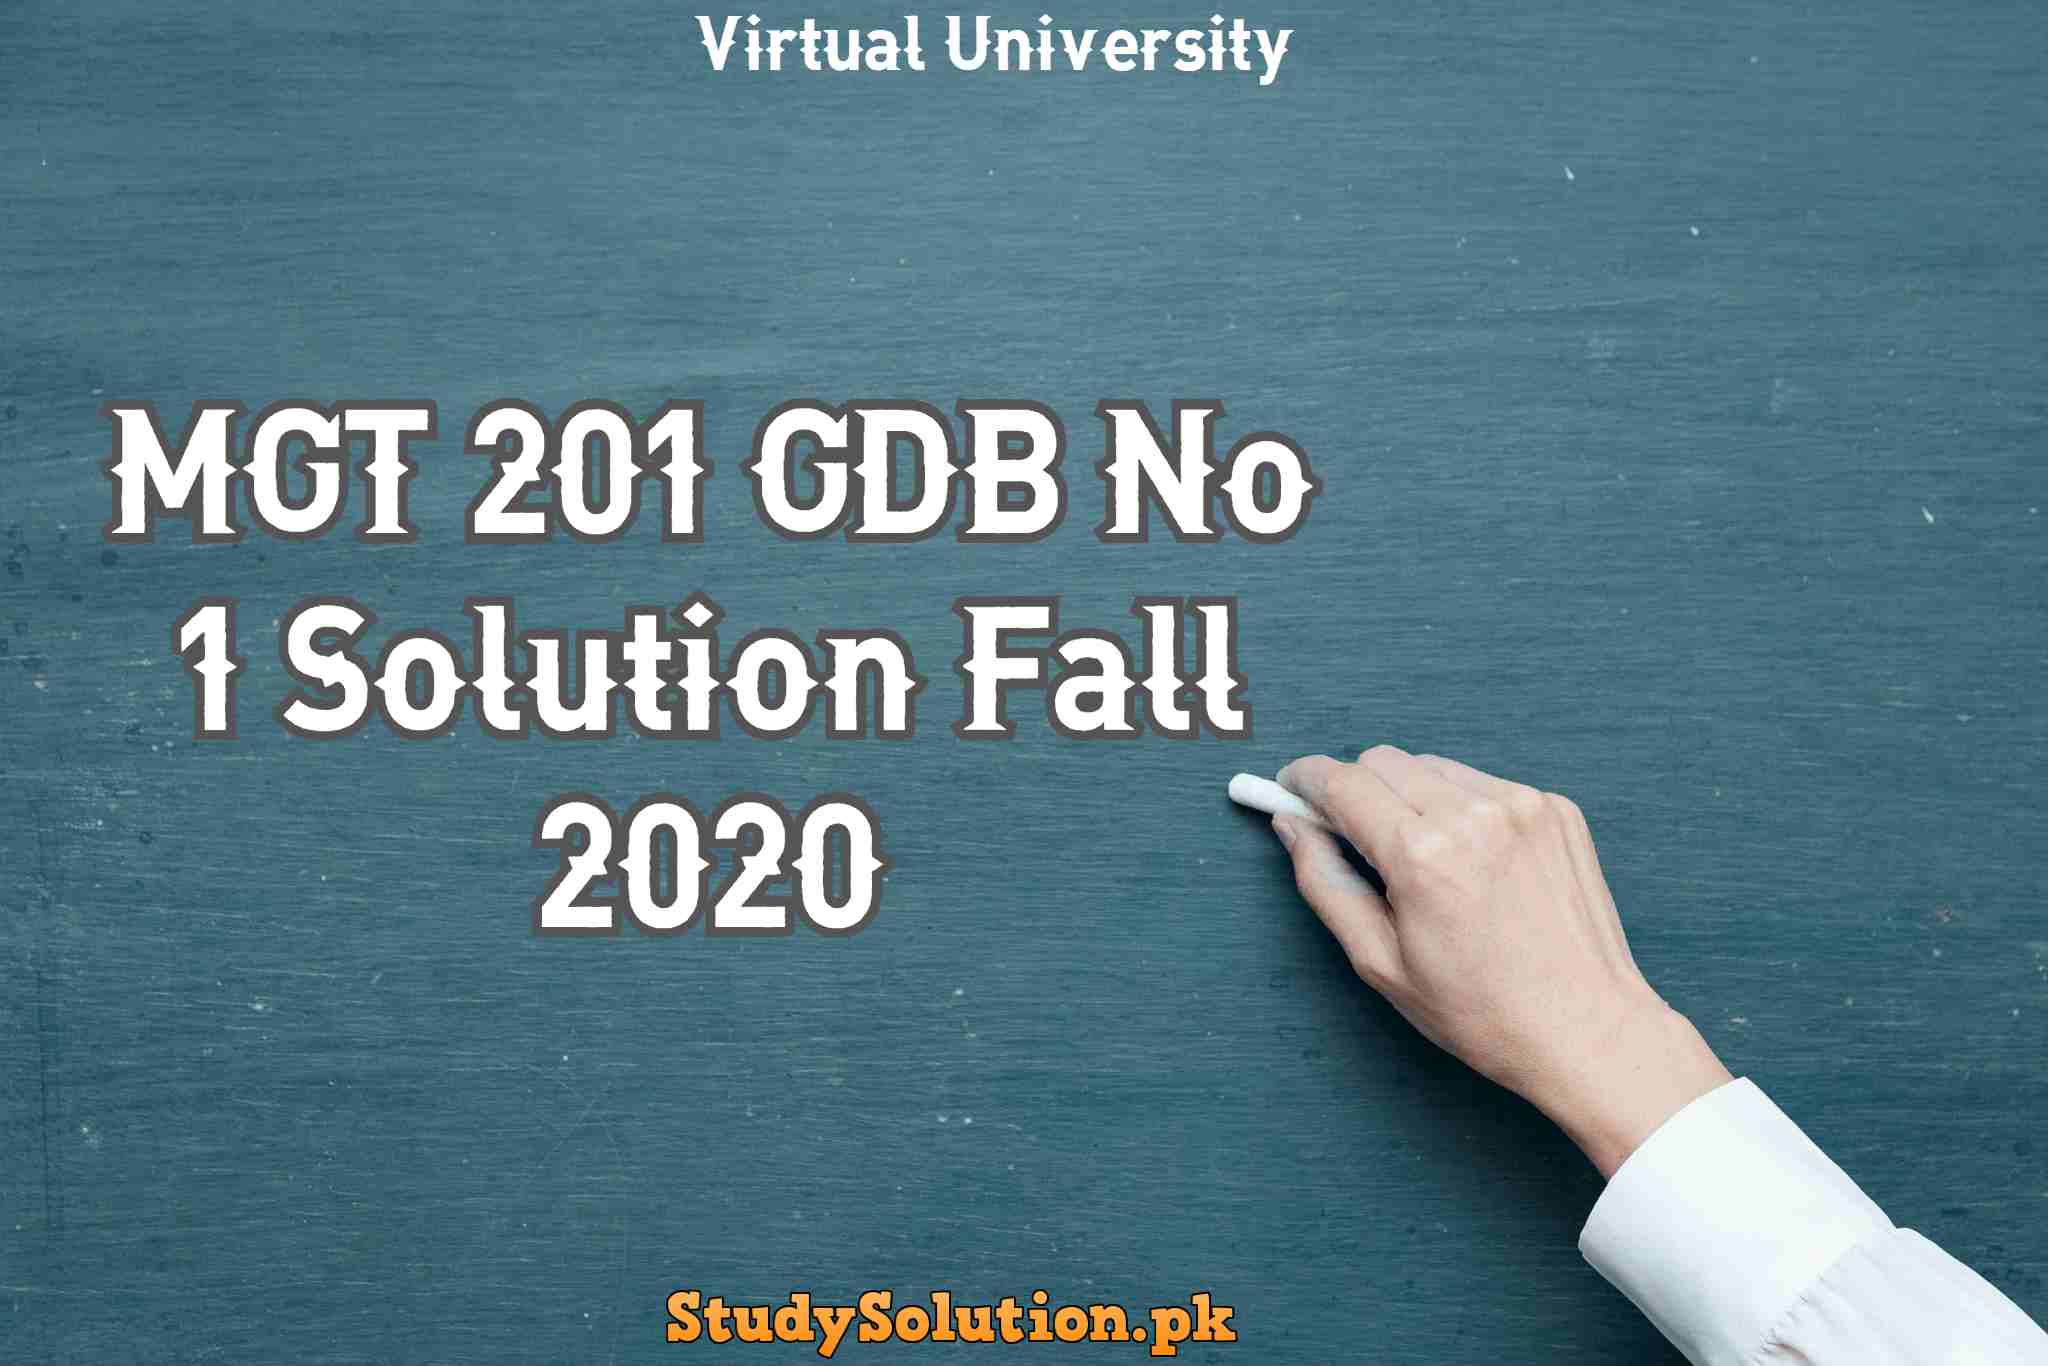 MGT 201 GDB No 1 Solution Fall 2020